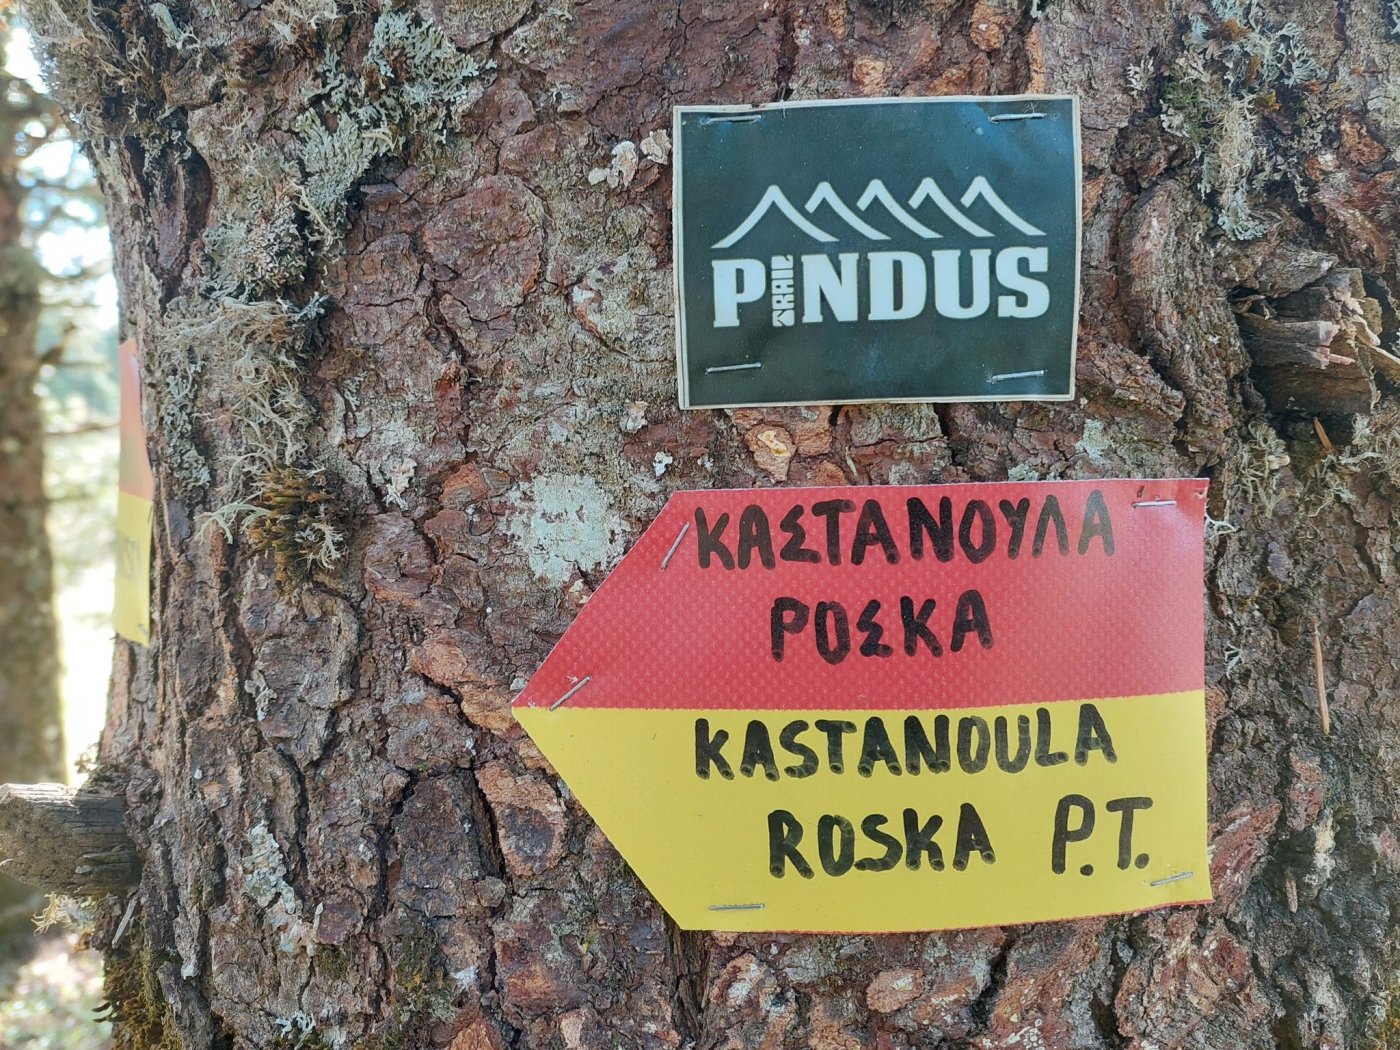 Domnista - Roska / path maintenance & temporary marking